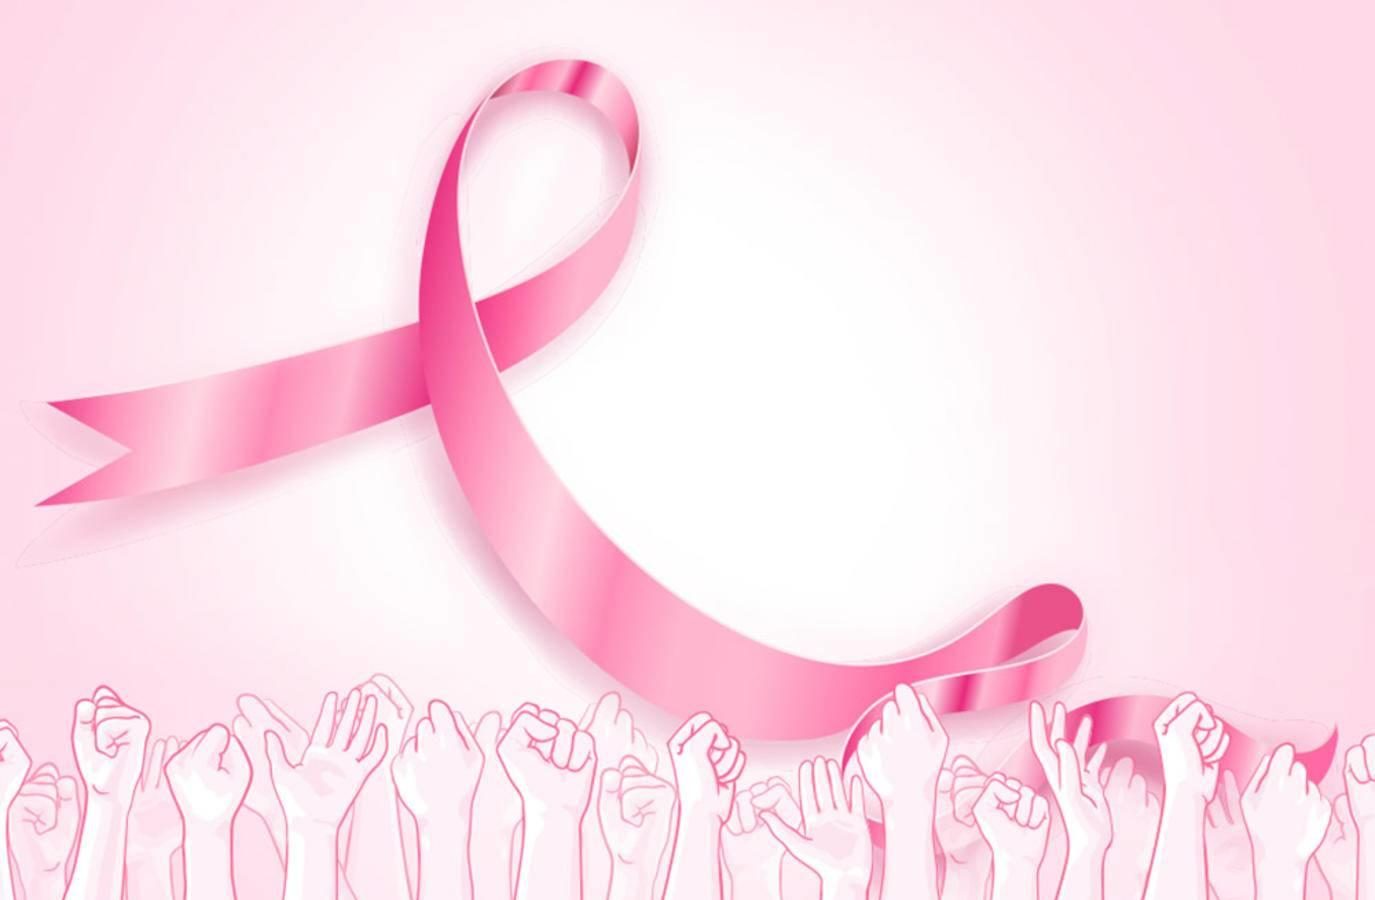 مؤشّر خطير حول سرطان الثدي لدى الشابّات في تونس